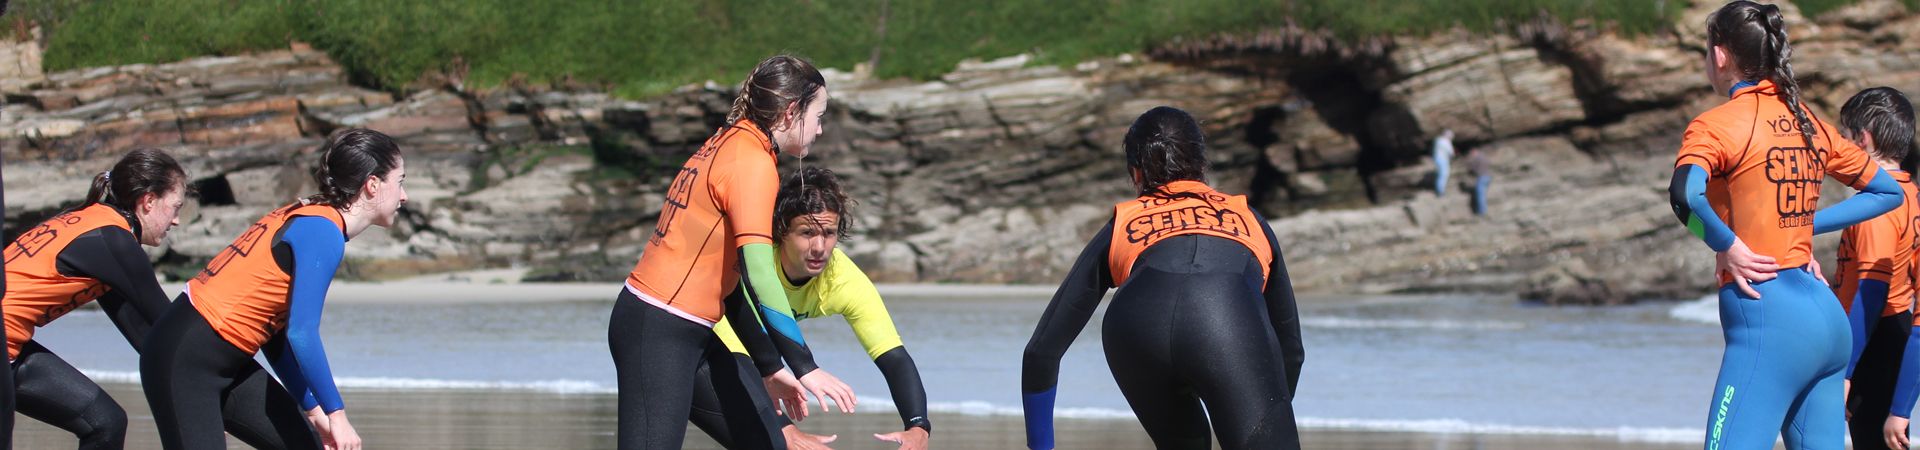 Cursos de surf para adultos en Galicia